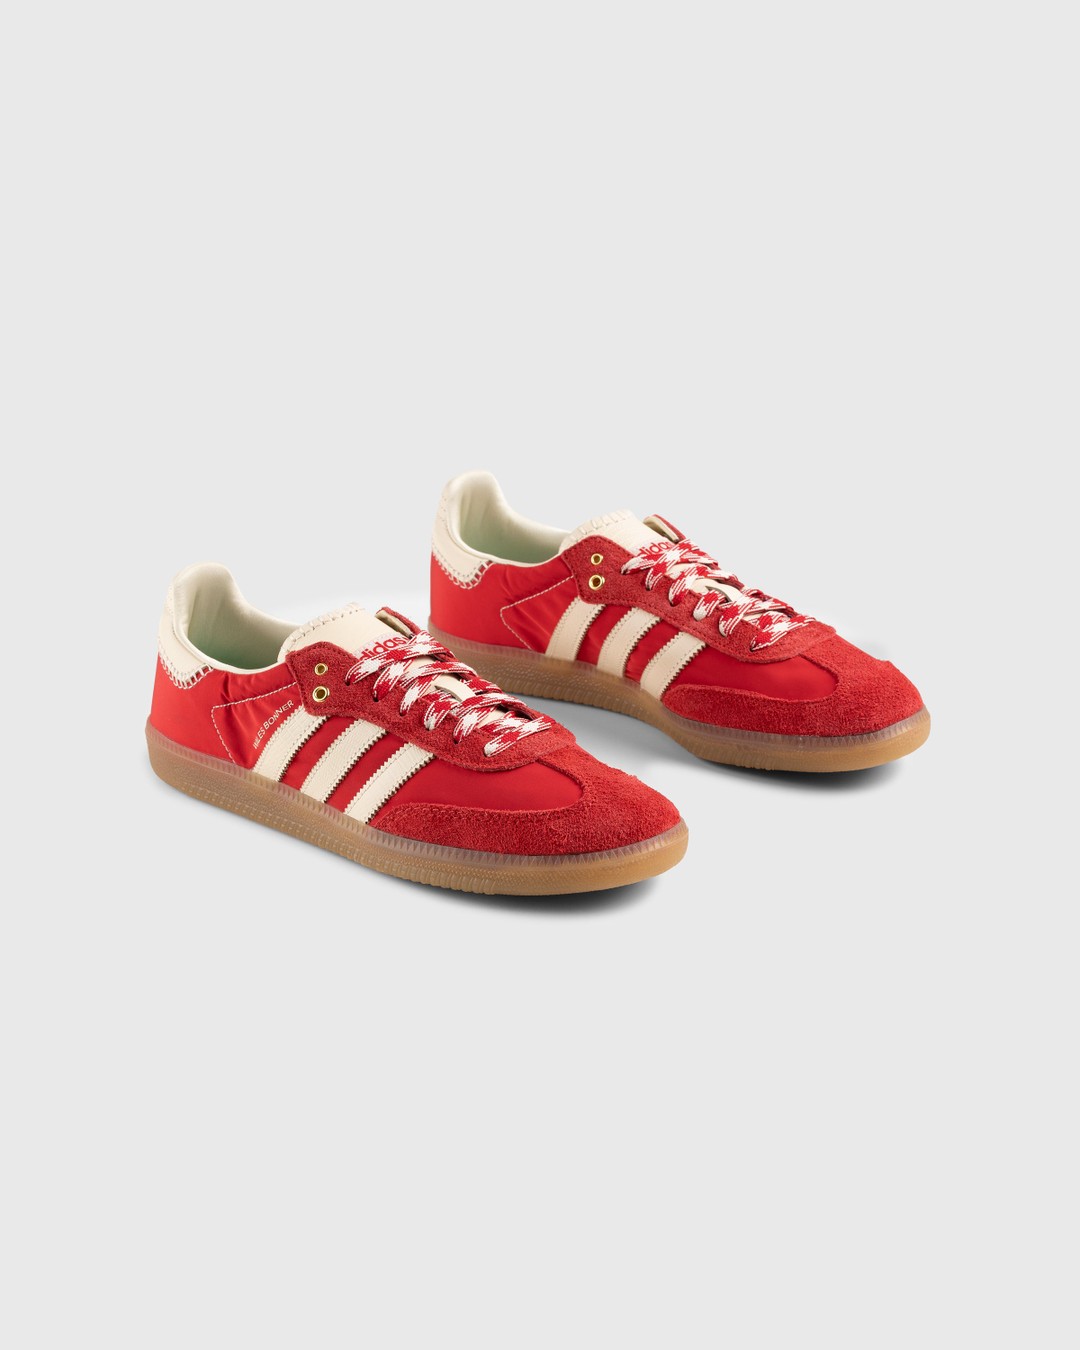 Adidas x Wales Bonner – WB Samba Scarlet/Ecru Tint/Scarlet - Sneakers - Red - Image 4